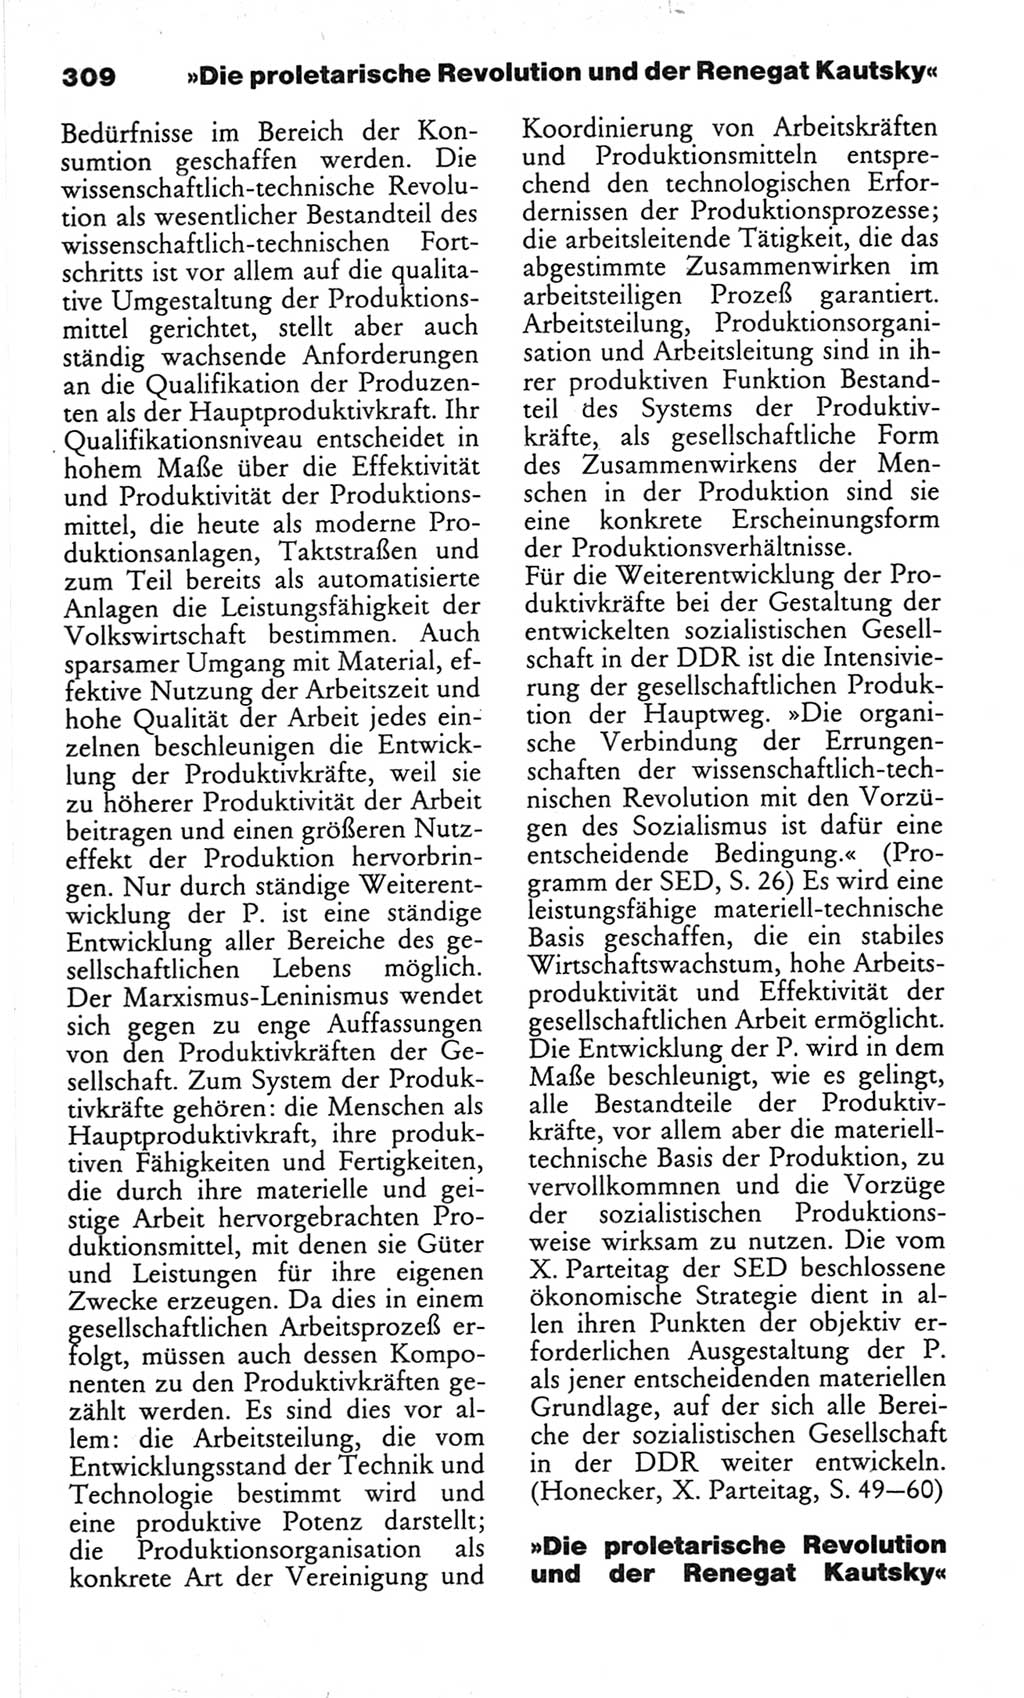 Wörterbuch des wissenschaftlichen Kommunismus [Deutsche Demokratische Republik (DDR)] 1982, Seite 309 (Wb. wiss. Komm. DDR 1982, S. 309)